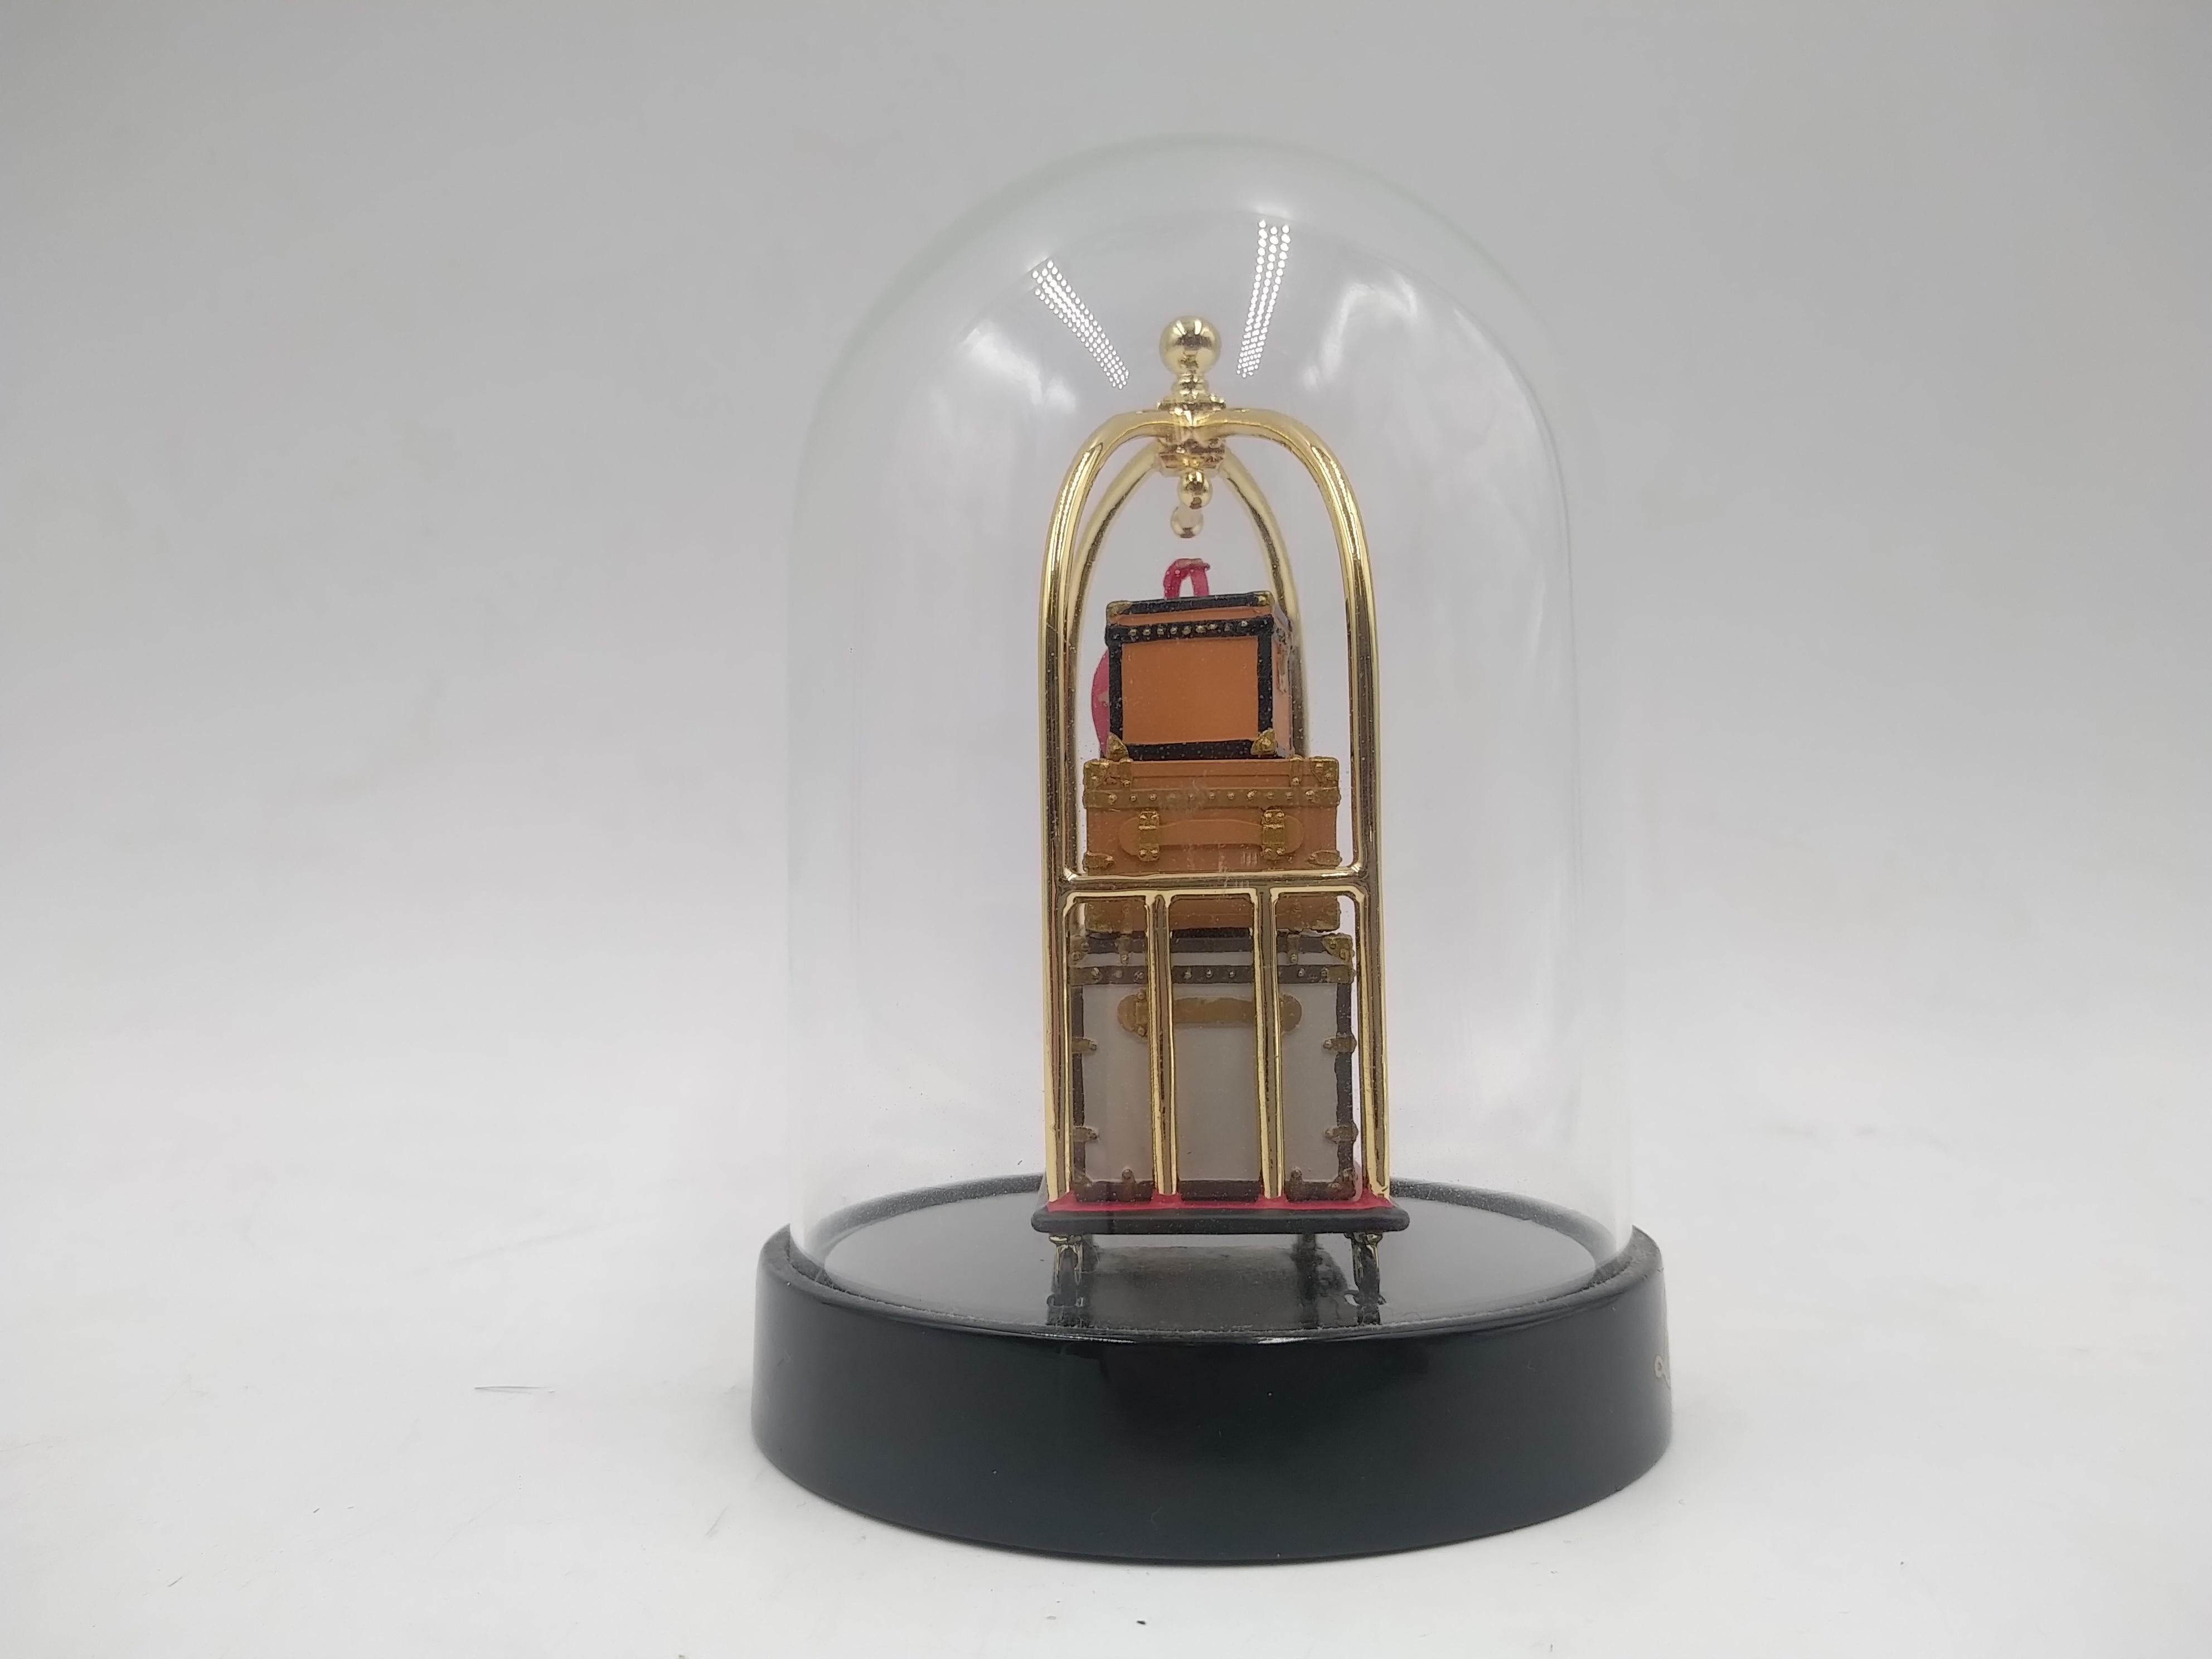 Sold at Auction: Vintage Louis Vuitton Snow Globe